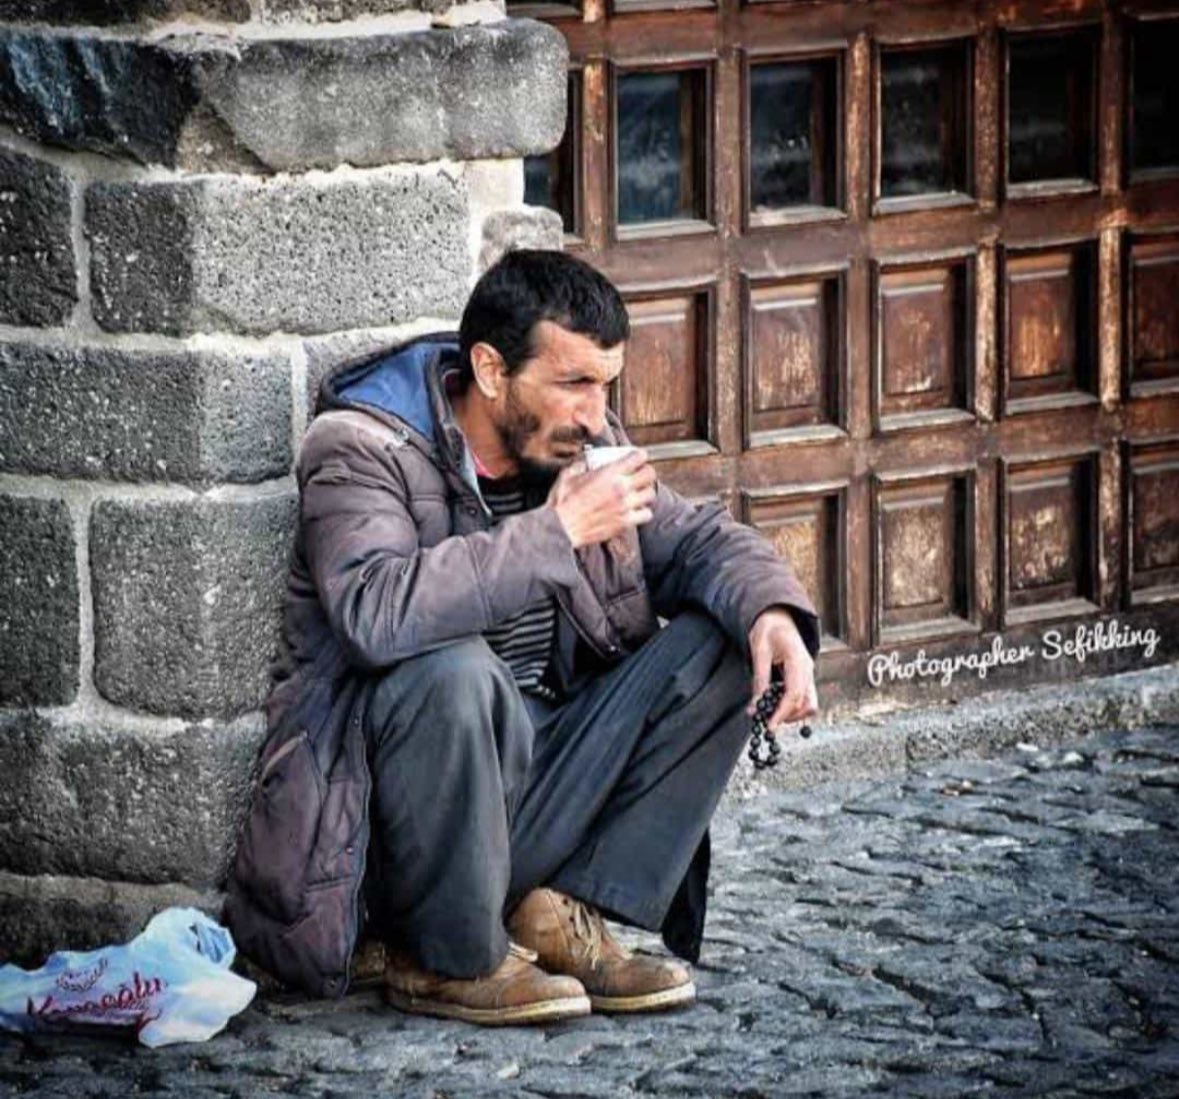 𝙞𝙣𝙣𝙚 𝙡𝙞𝙡𝙡𝙚𝙝𝙞 𝙫𝙚 𝙞𝙣𝙣𝙚 𝙞𝙡𝙚𝙮𝙝𝙞 𝙧𝙖𝙘𝙞𝙪𝙣 Diyarbakır'ın sevilen ve herkesin tanımış olduğu ' Ramazan Pişkin ' Yani Ramazan Hocamız İstanbul'da Cerrahpaşa da bir çay ocağında namaz üstünde iken bıçaklanarak katledilmiştir. Allah Mekanını Cennet eylesin ve…